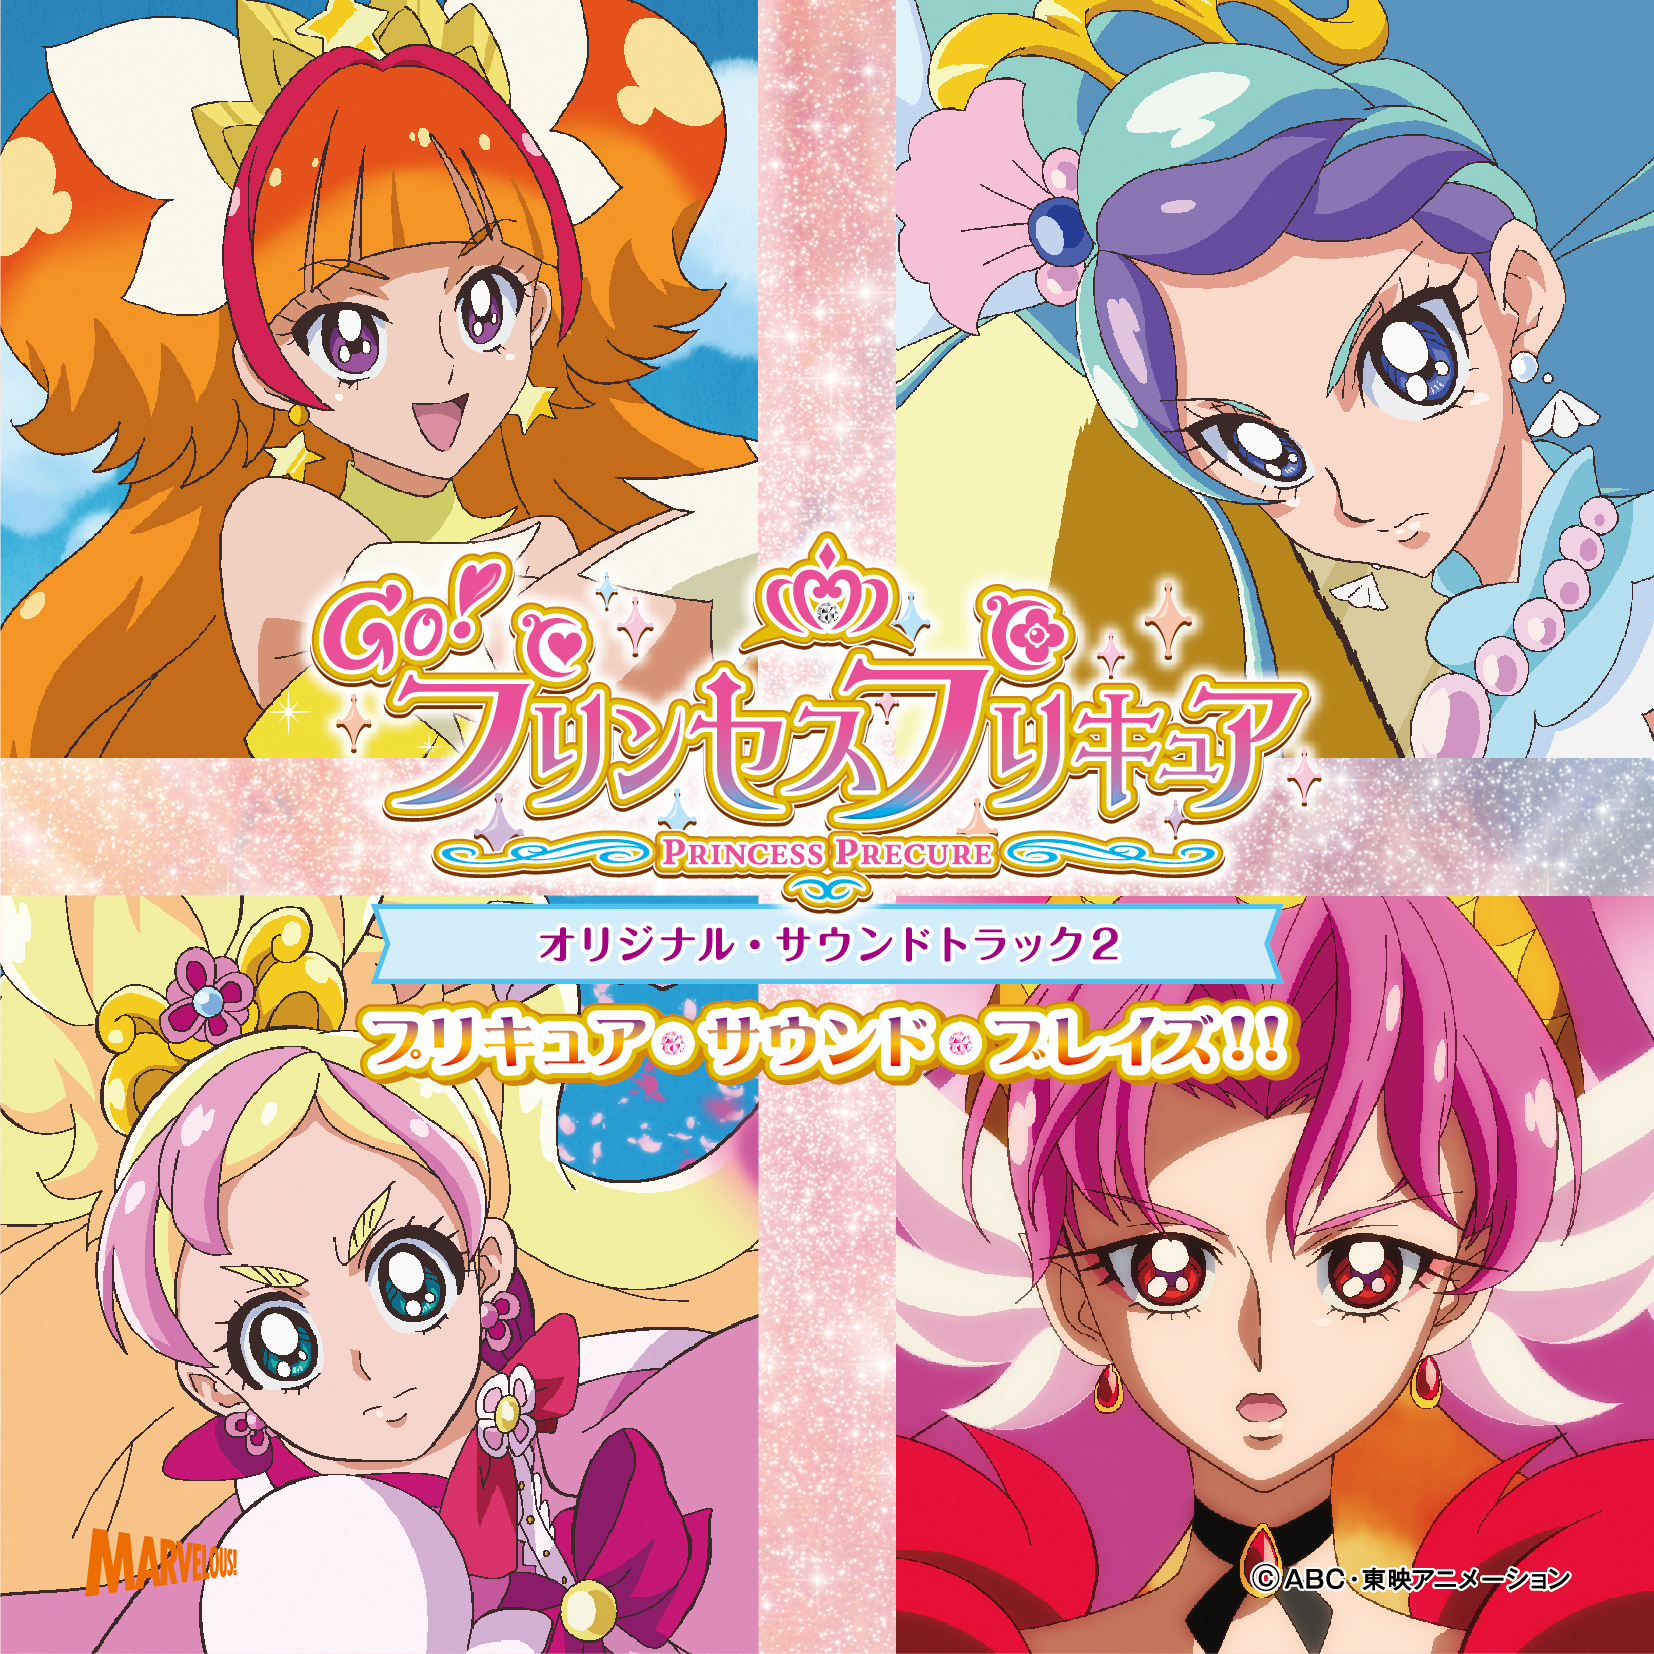 Go Princess Pretty Cure Original Soundtrack 2 Pretty Cure Sound Blaze Pretty Cure Wiki Fandom